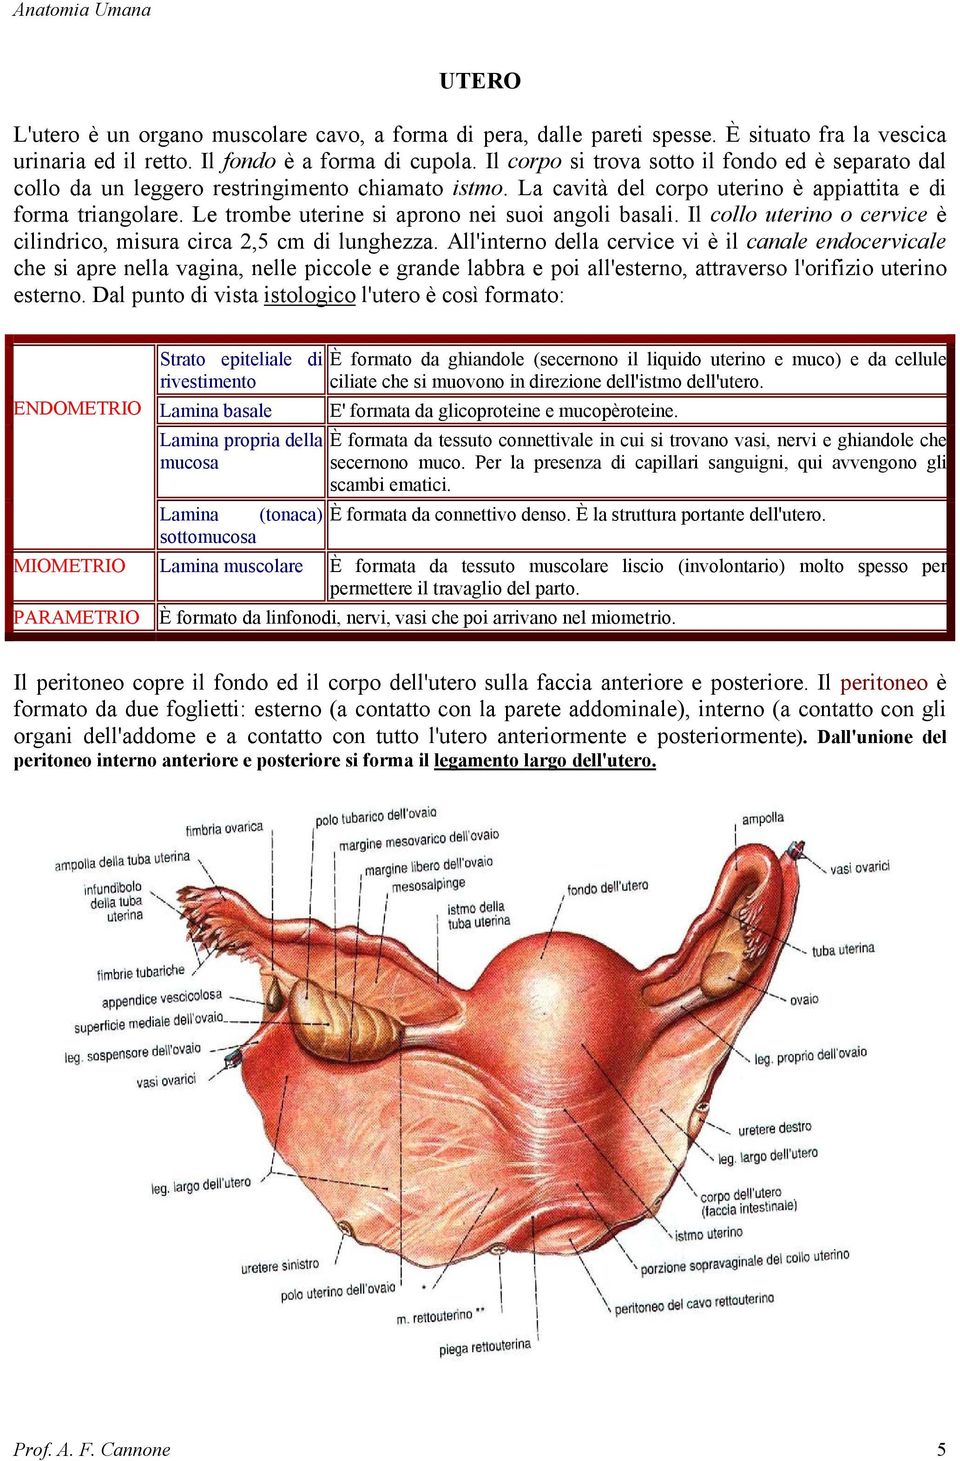 Le trombe uterine si aprono nei suoi angoli basali. Il collo uterino o cervice è cilindrico, misura circa 2,5 cm di lunghezza.